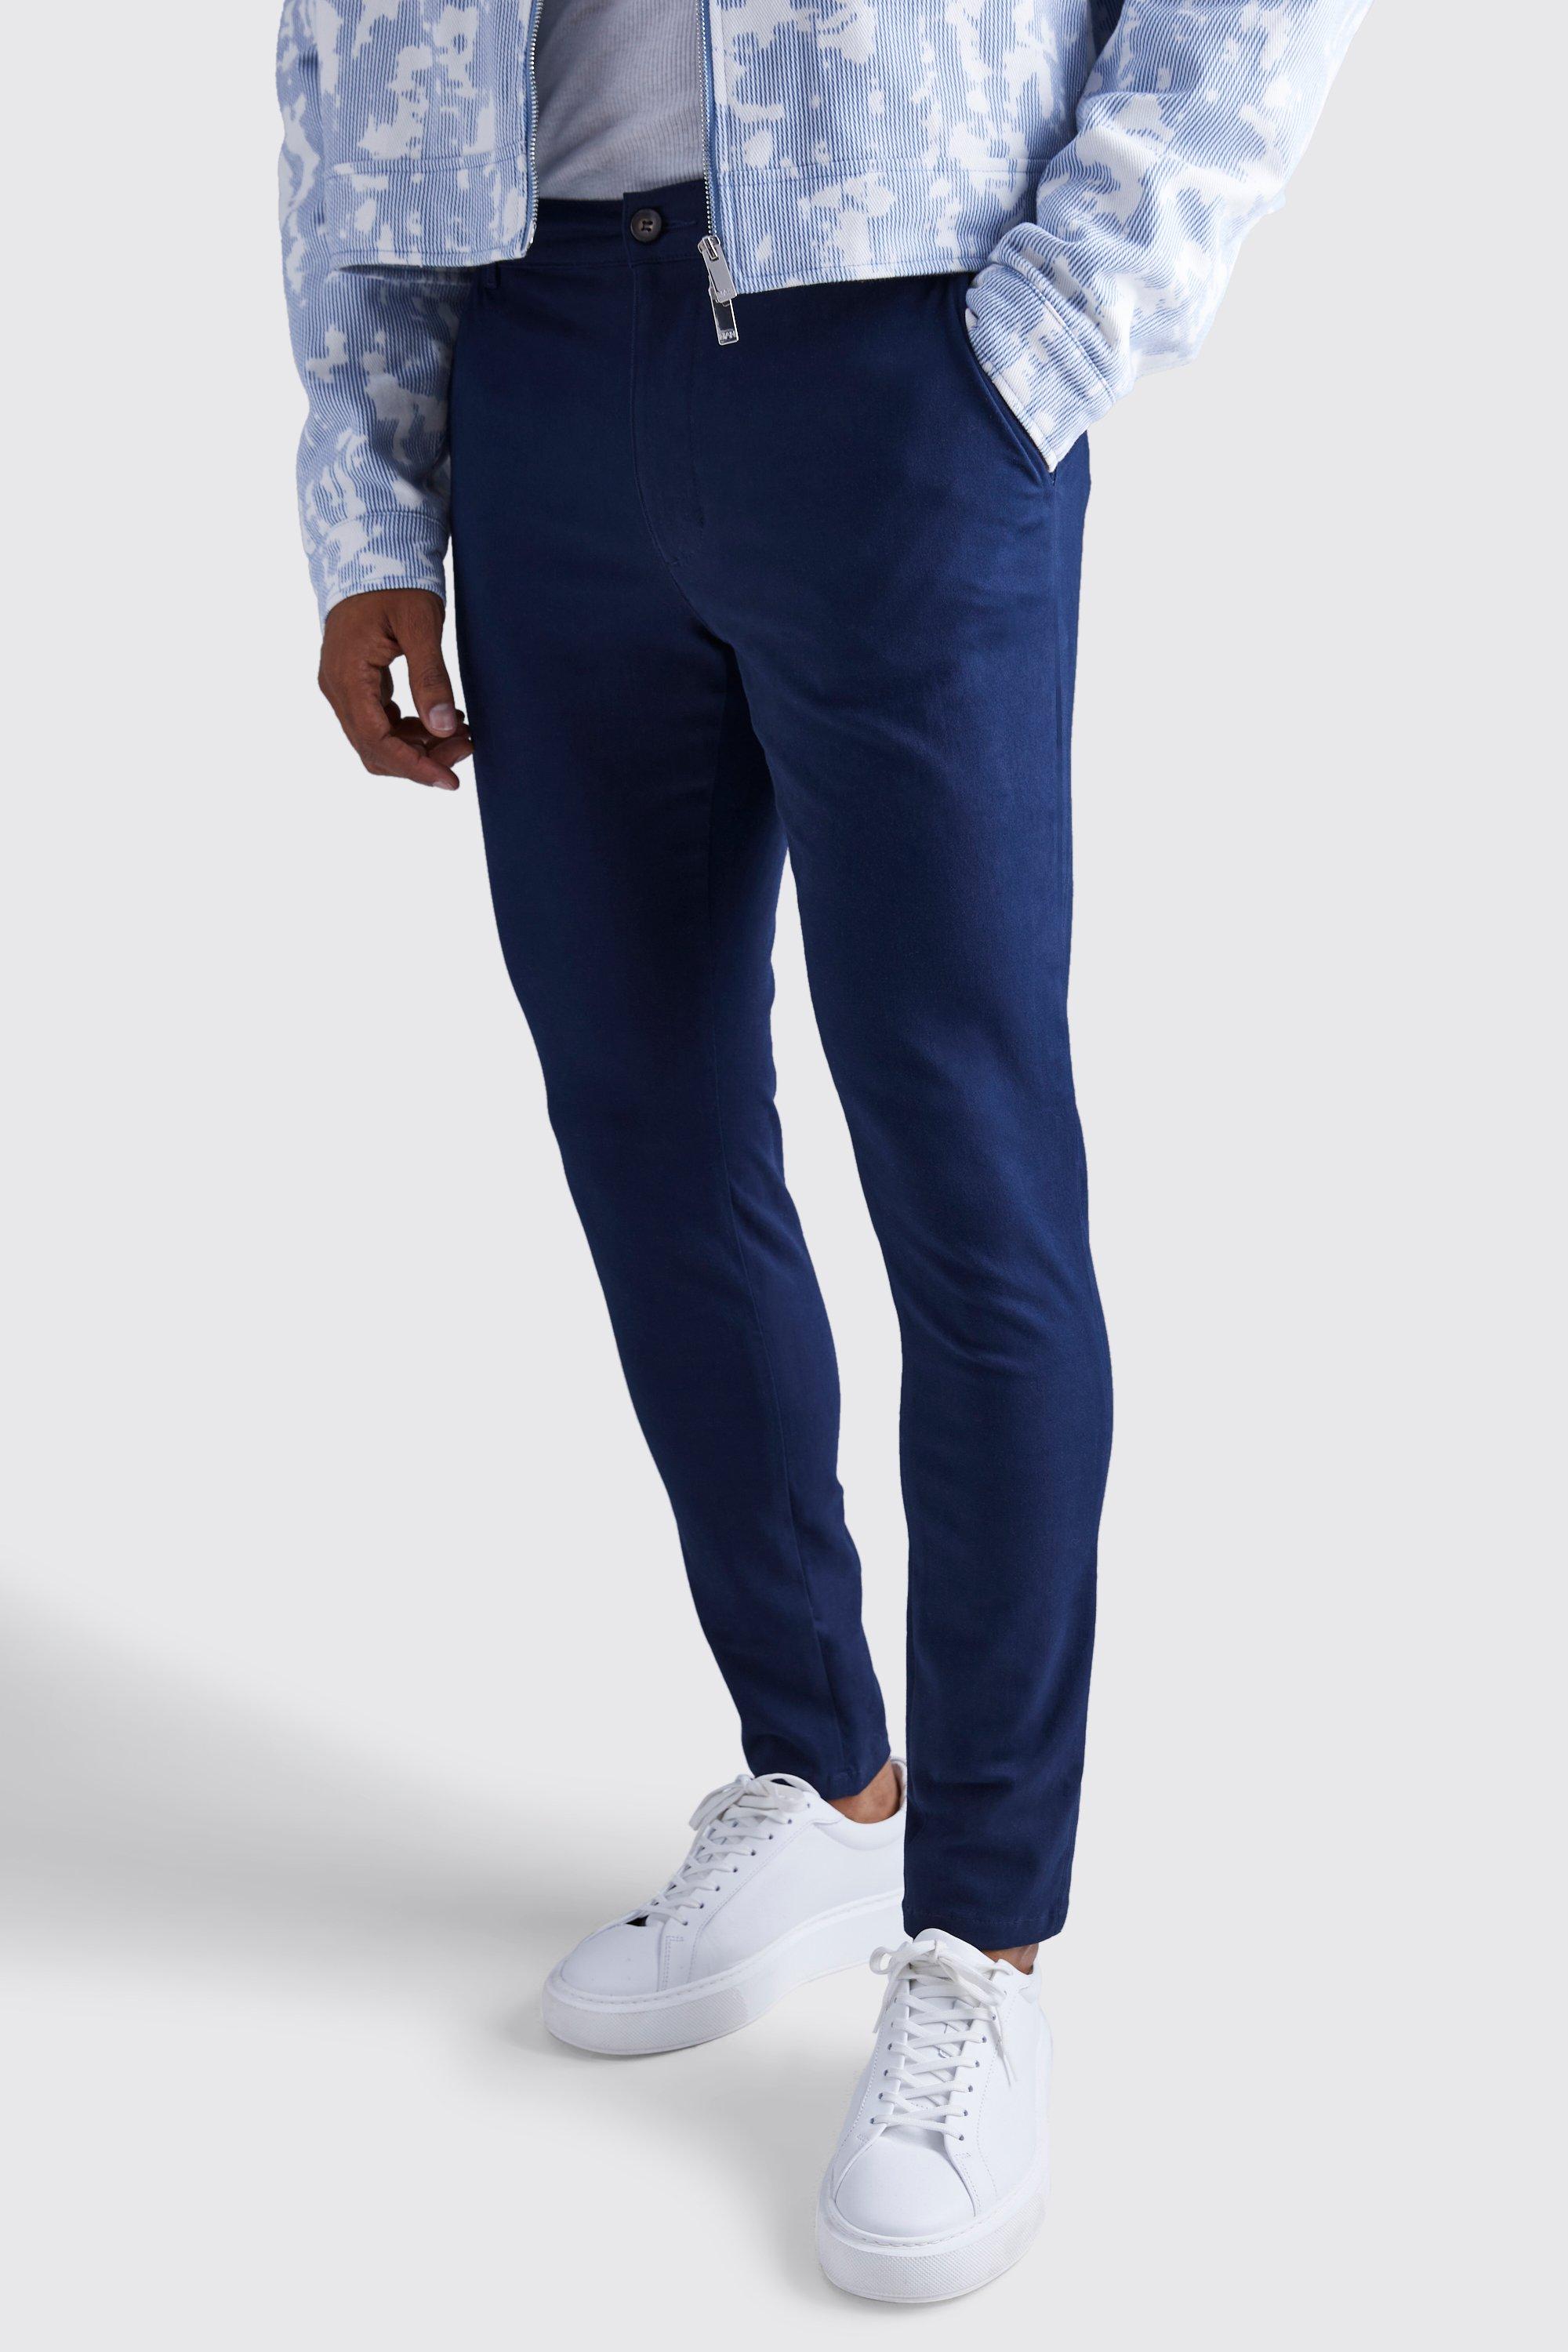 pantalon chino skinny homme - bleu - 34r, bleu